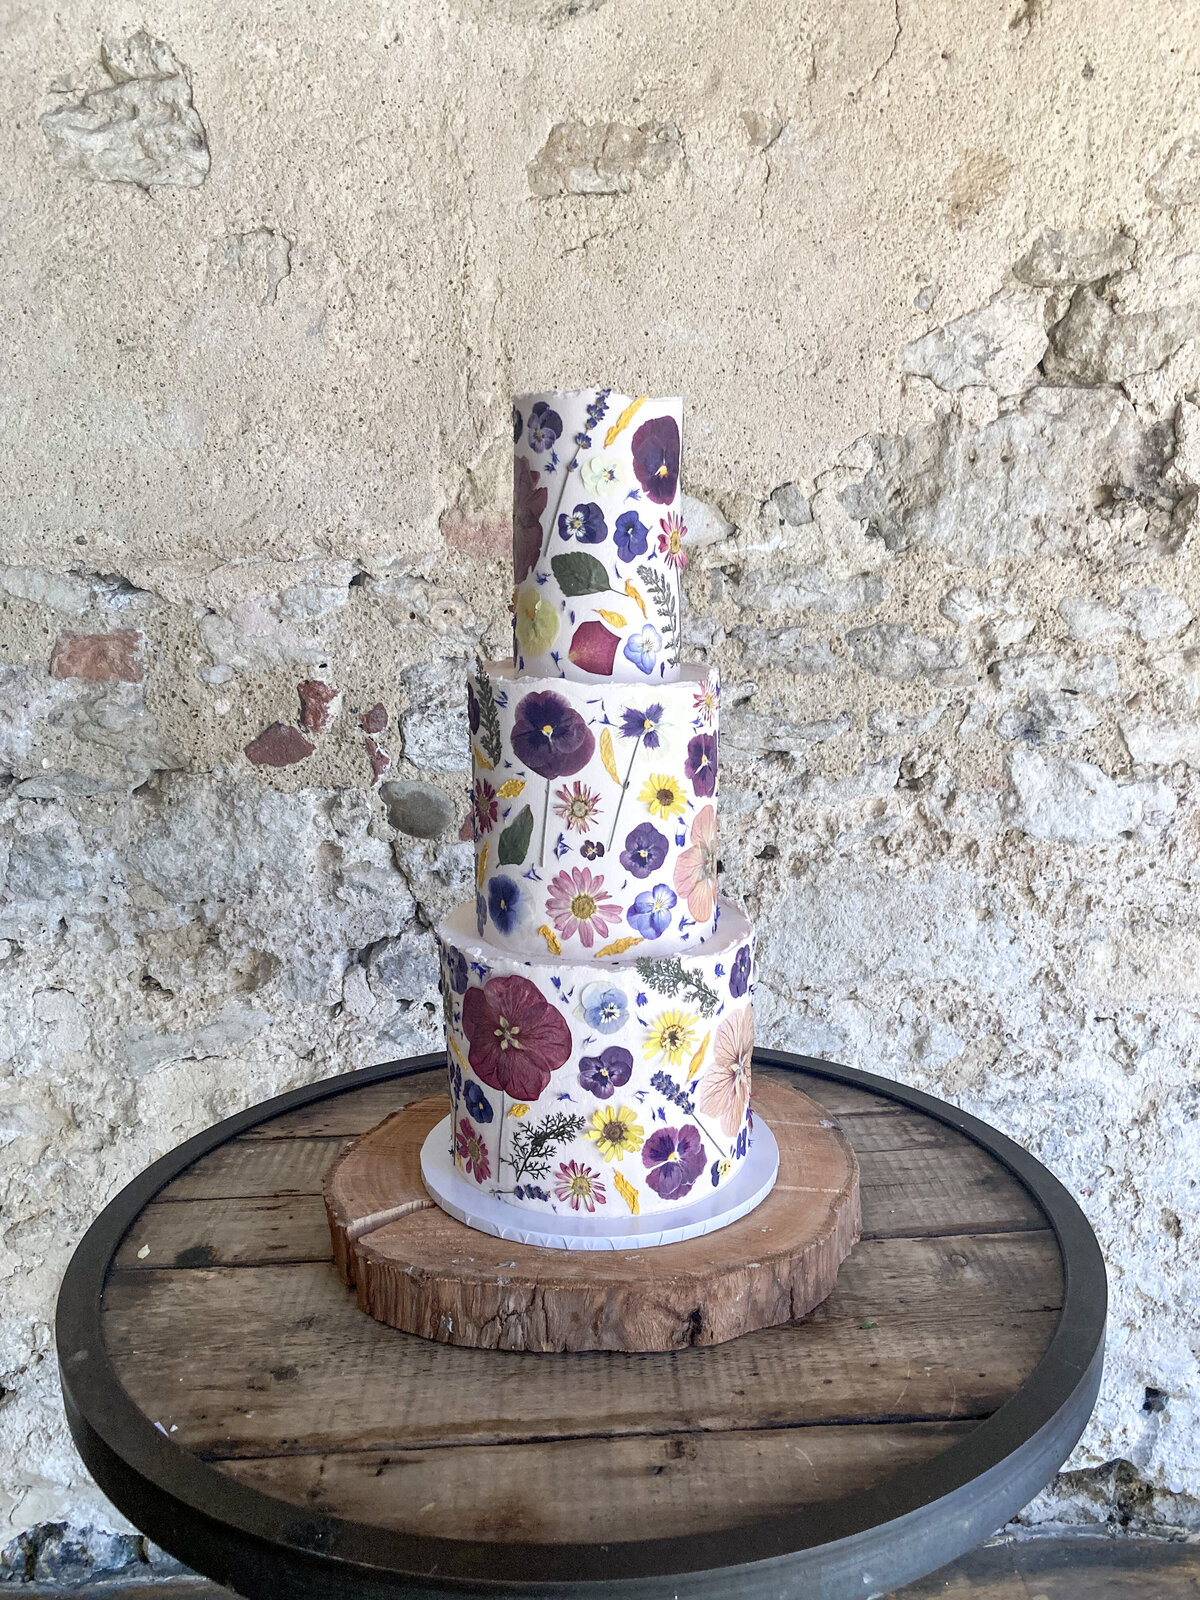 Full coverage edible flower wedding cake